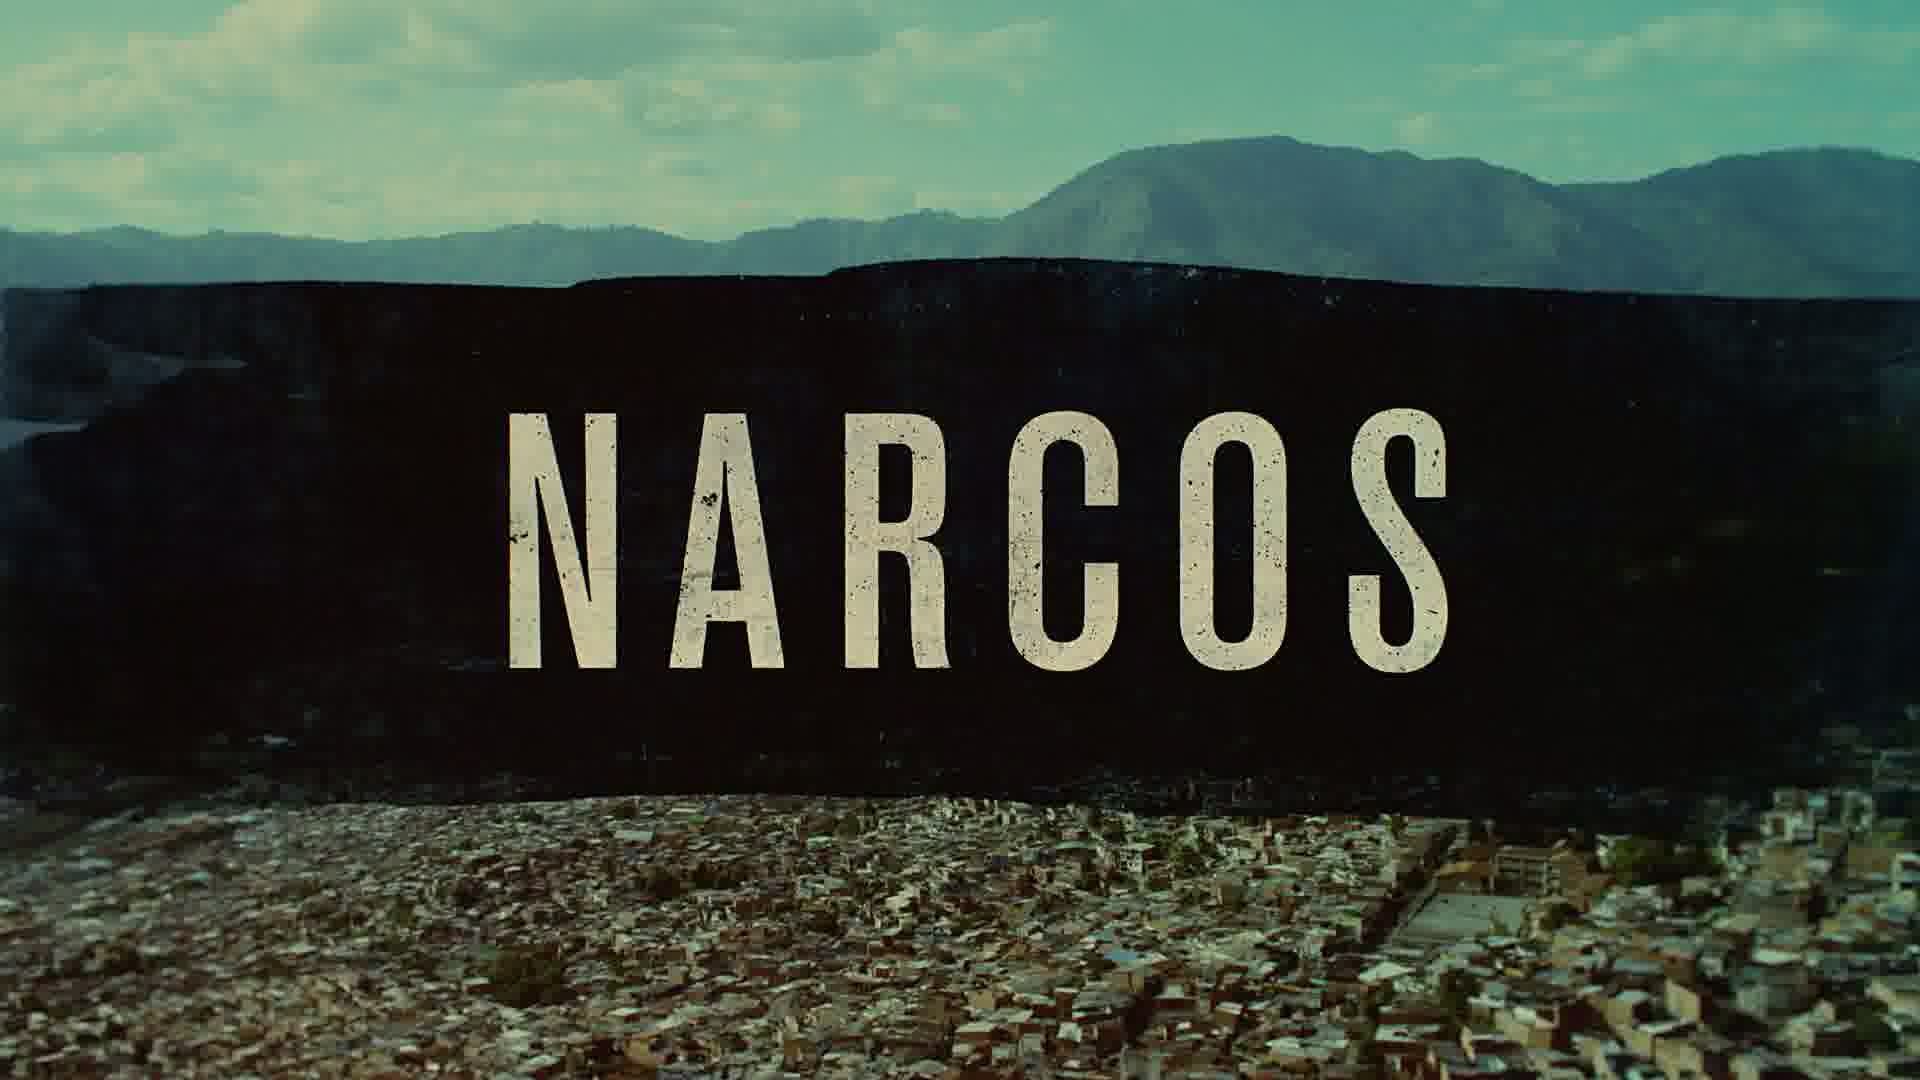 Narcos, Movies Wallpaper